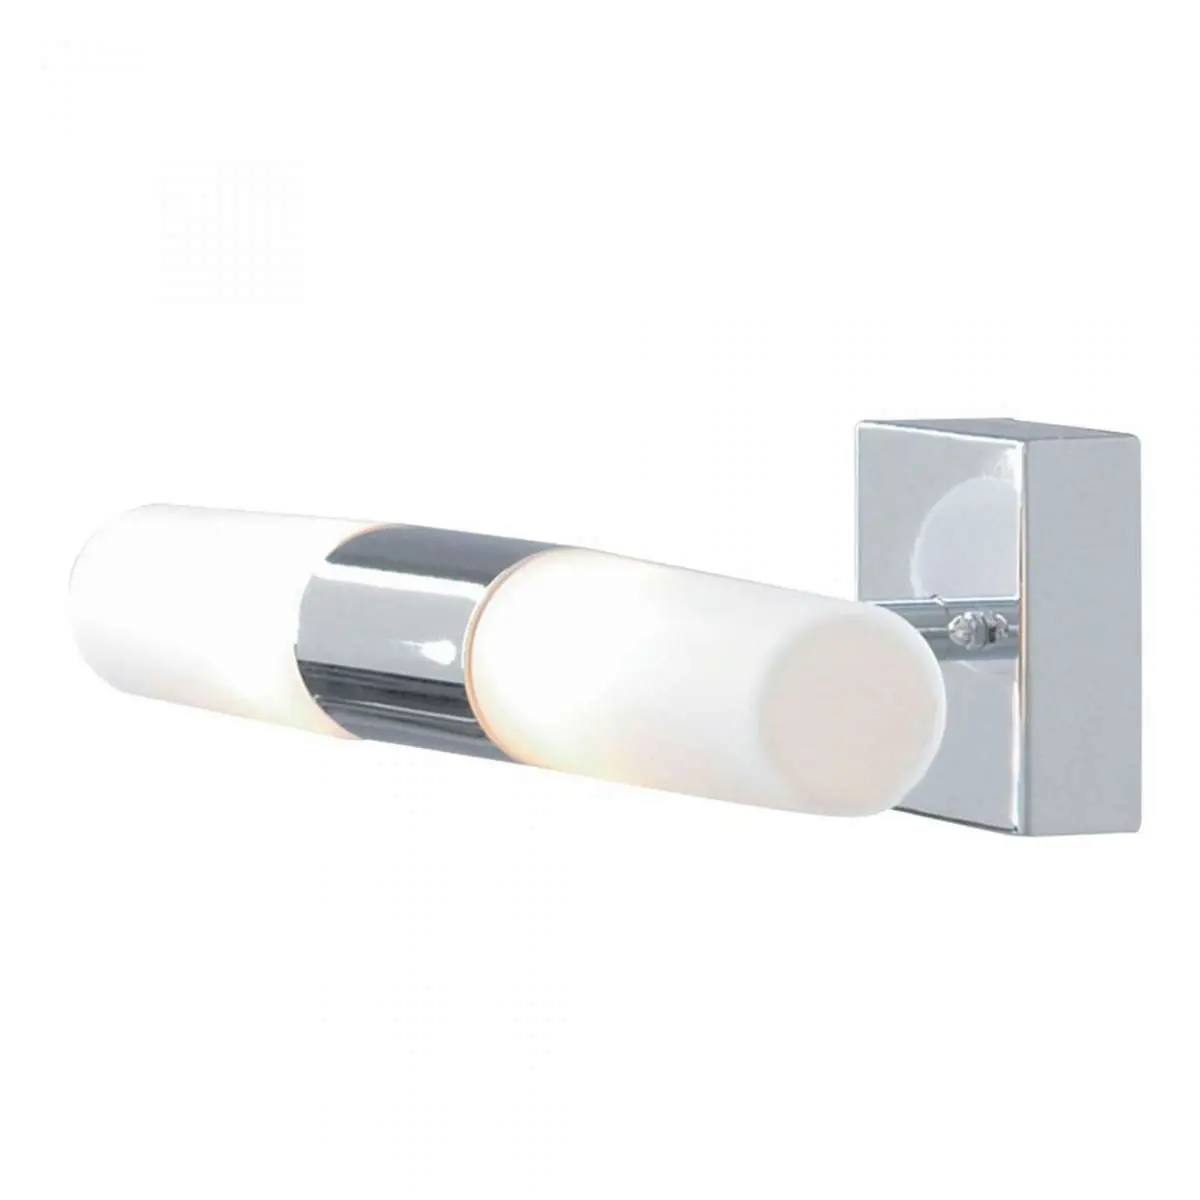 Lima 2 Light LED Bathroom Wall Bracket Chrome With White Glass